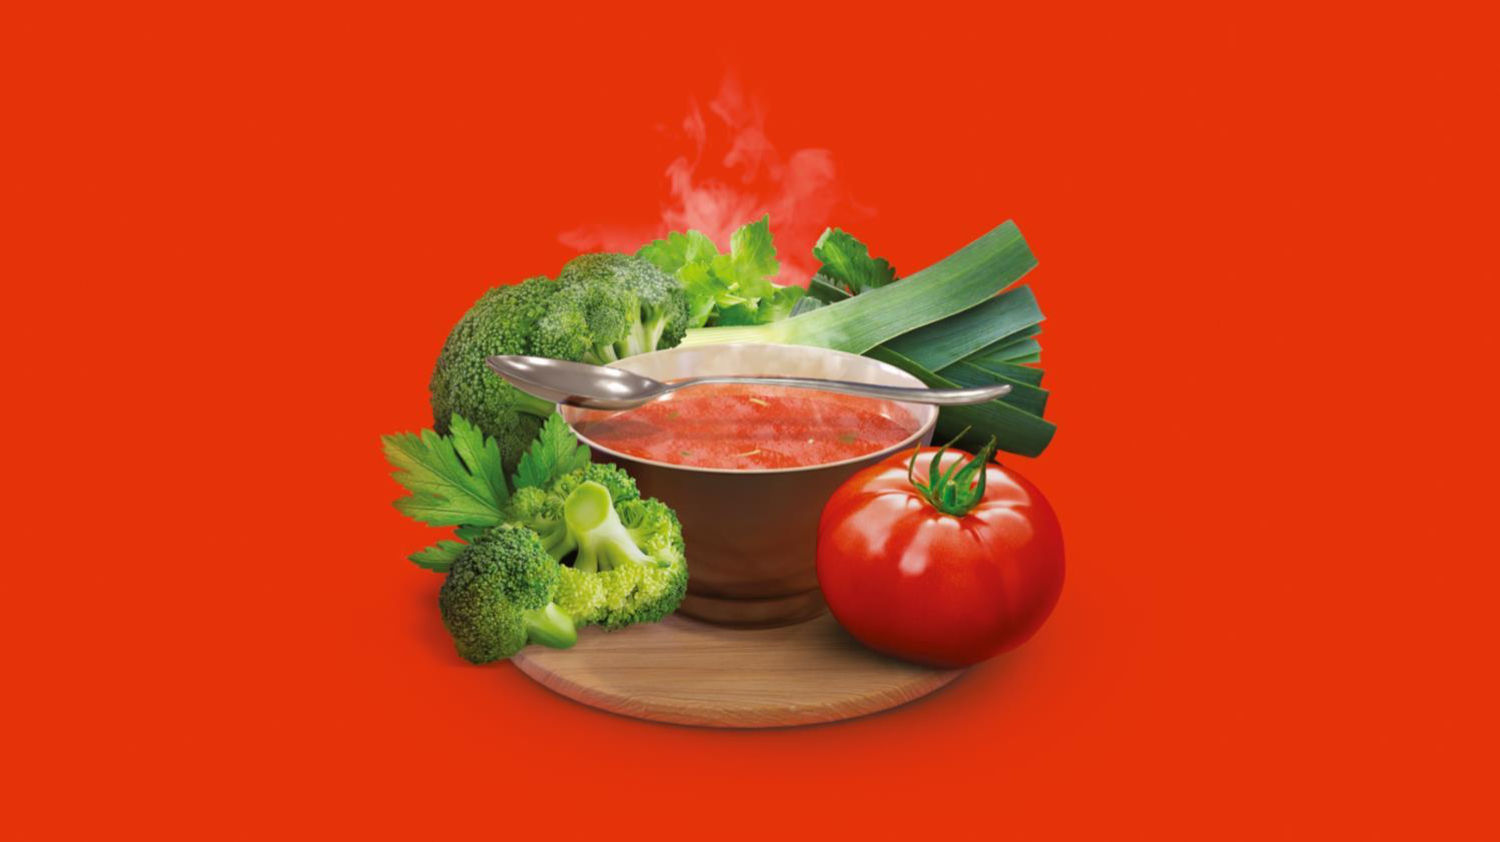 Худеем вкусно с необычайным супом! Дейли Делишес суп из спелых томатов и брокколи - источник белка и пищевых волокон. Быстро и удобно готовить. Насыщает без лишних калорий. Идеально подходит для вегетарианцев и веганов!